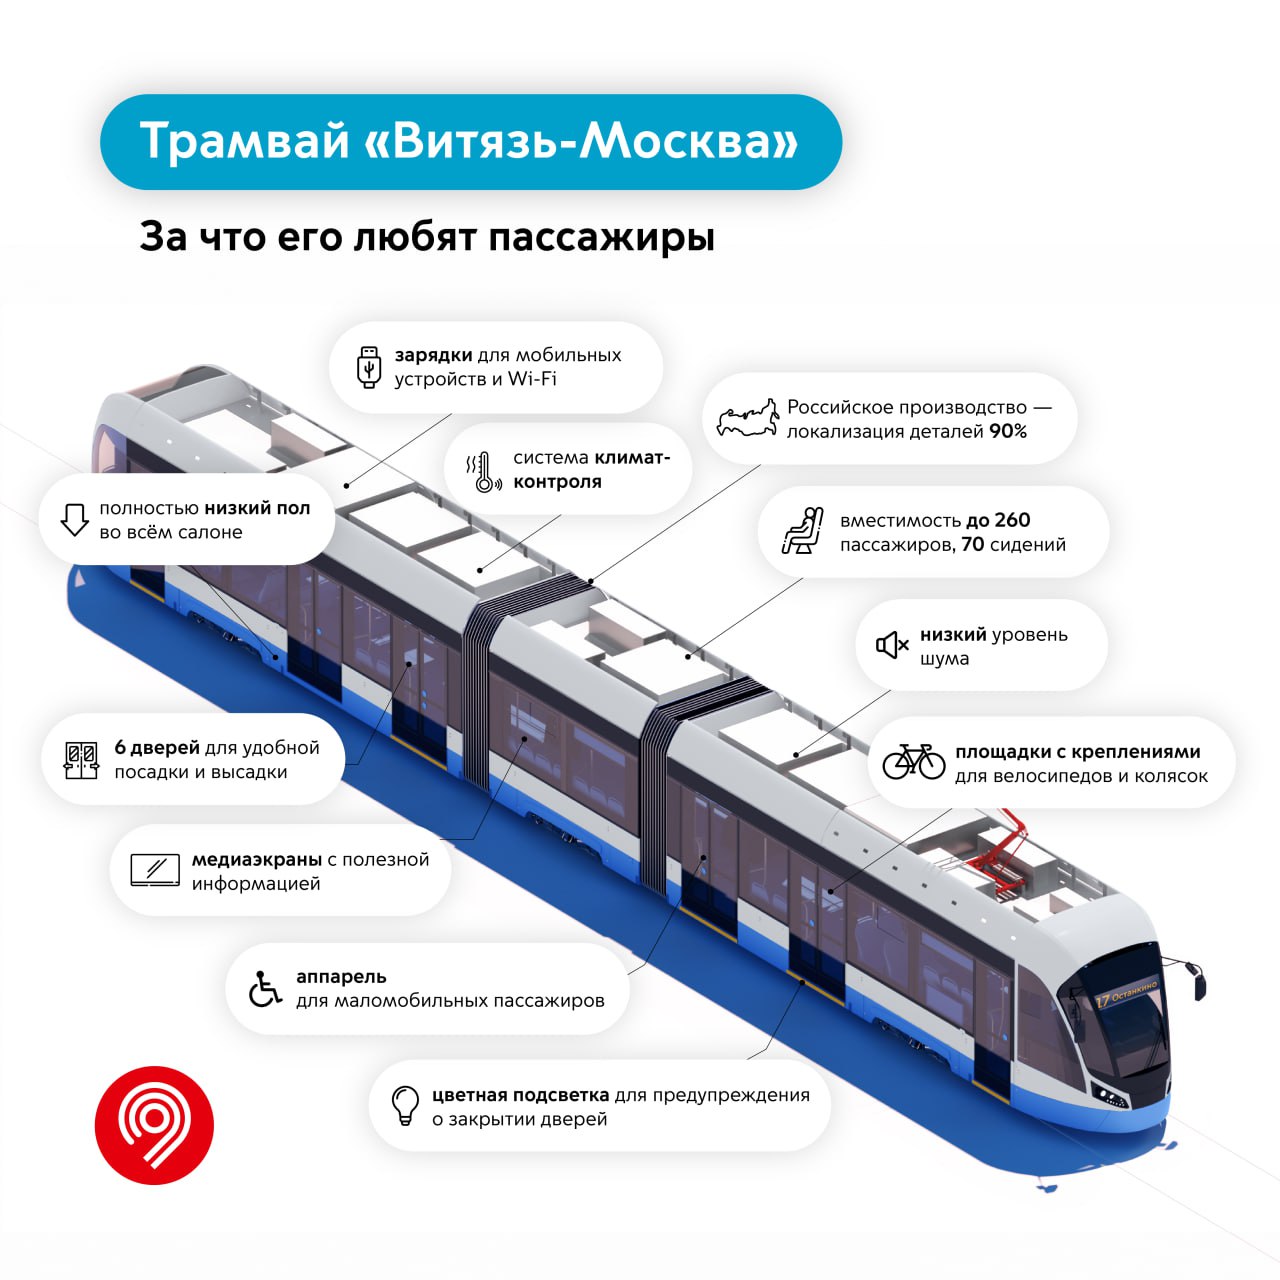 Уже 7 лет трамвай «Витязь-Москва» выходит на столичные улицы